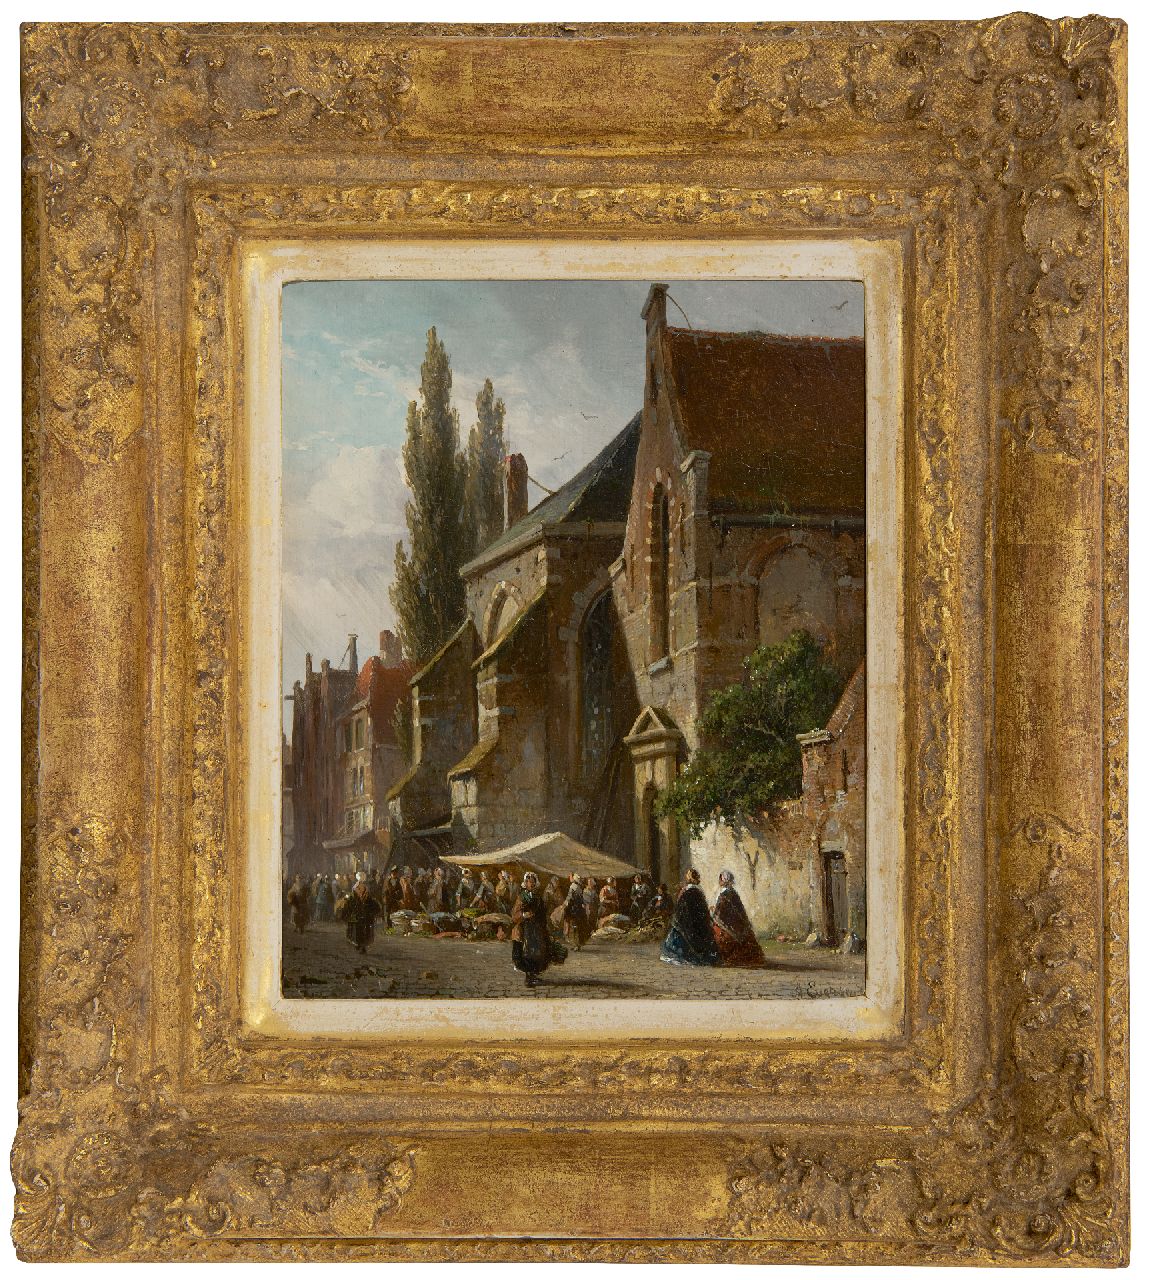 Eversen A.  | Adrianus Eversen | Schilderijen te koop aangeboden | Marktdag bij de kerk, olieverf op paneel 19,0 x 15,3 cm, gesigneerd rechtsonder